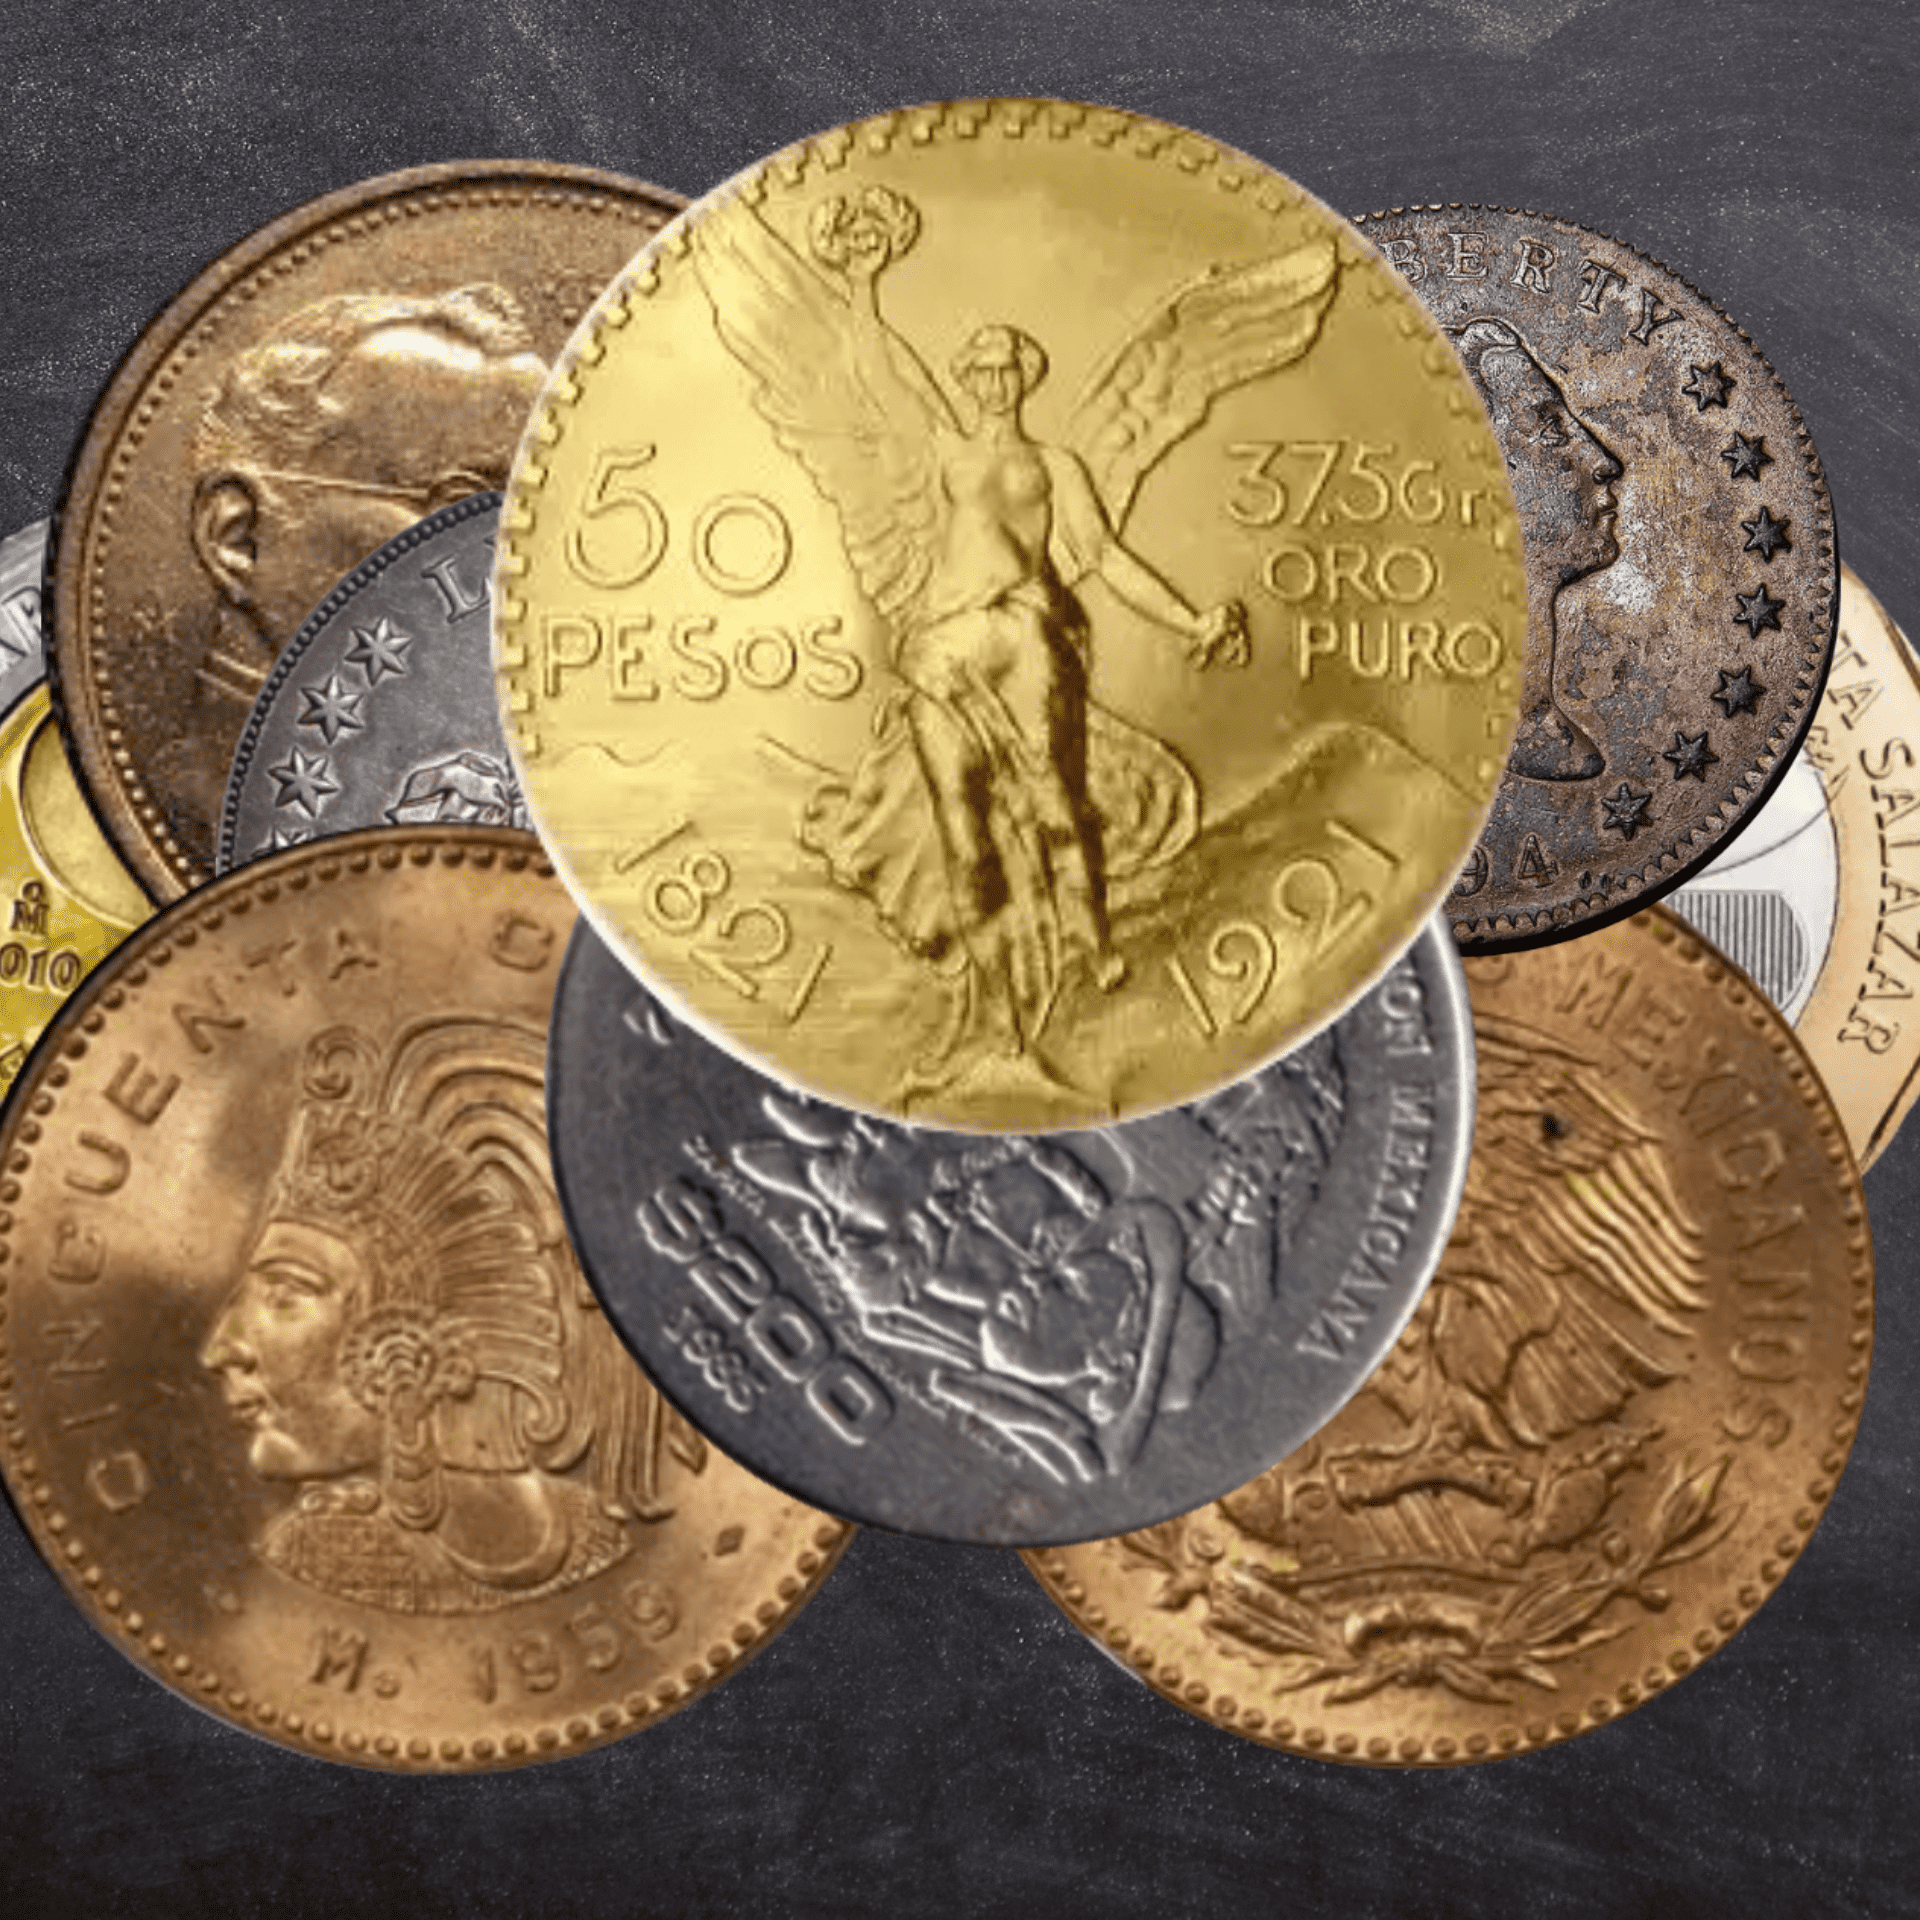 Monedas antiguas, ¿Cómo saber su valor y si son piezas coleccionables?